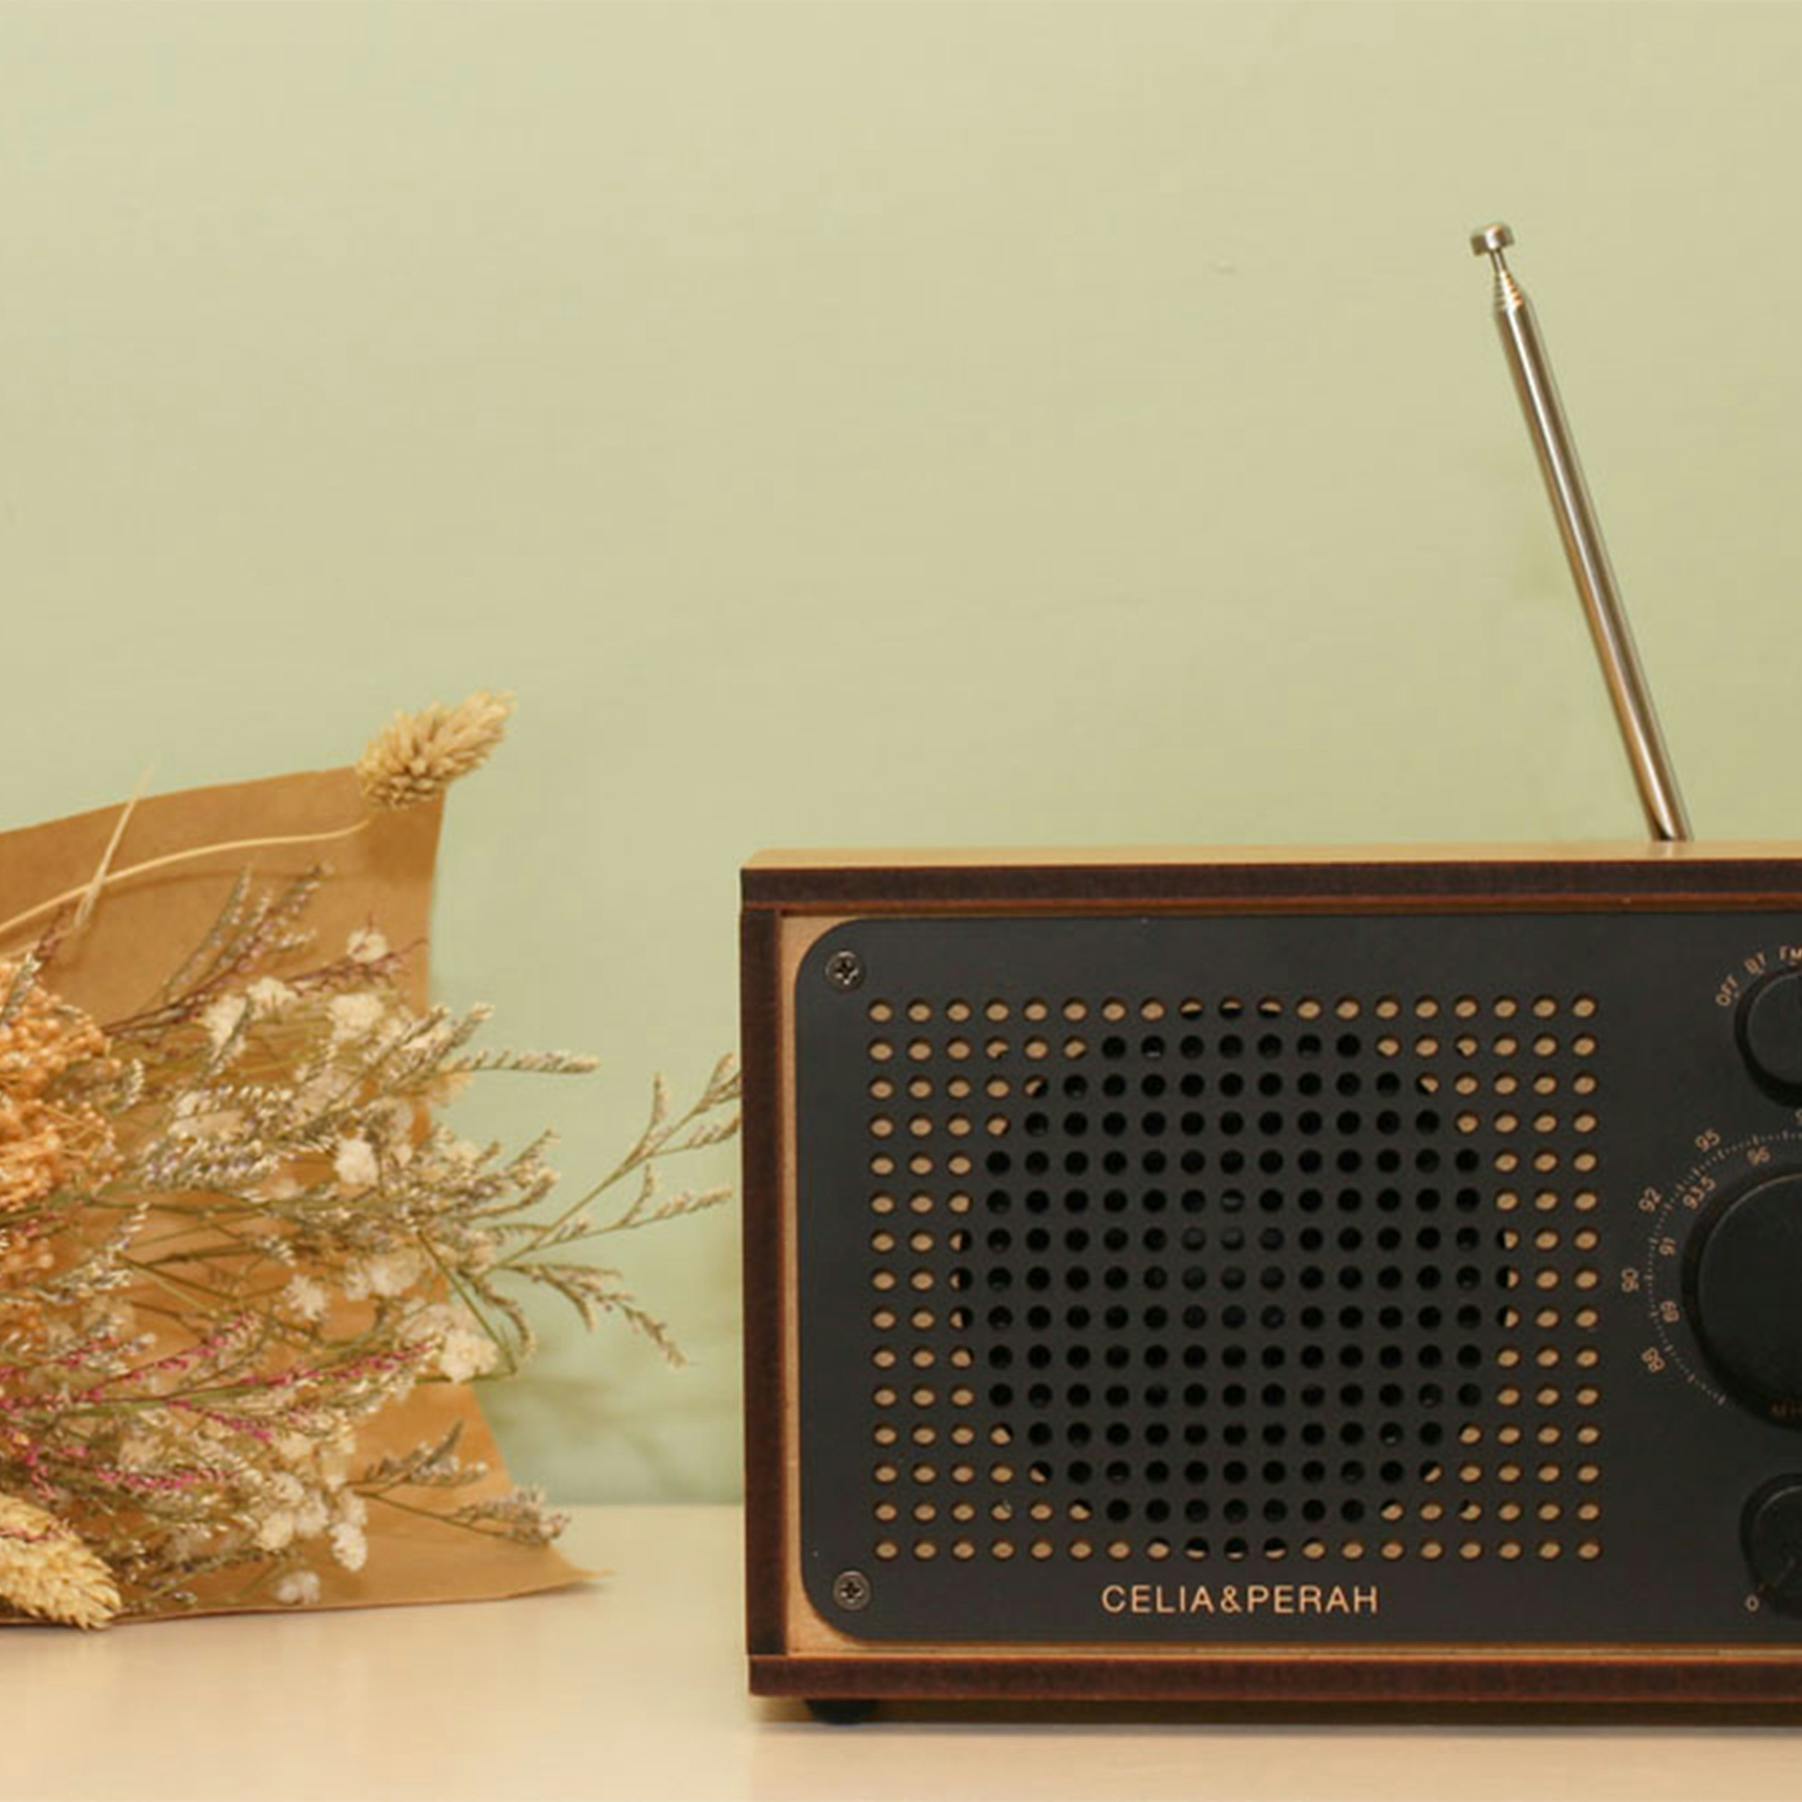 Celia & Perah DIY Bluetooth Classic Radio